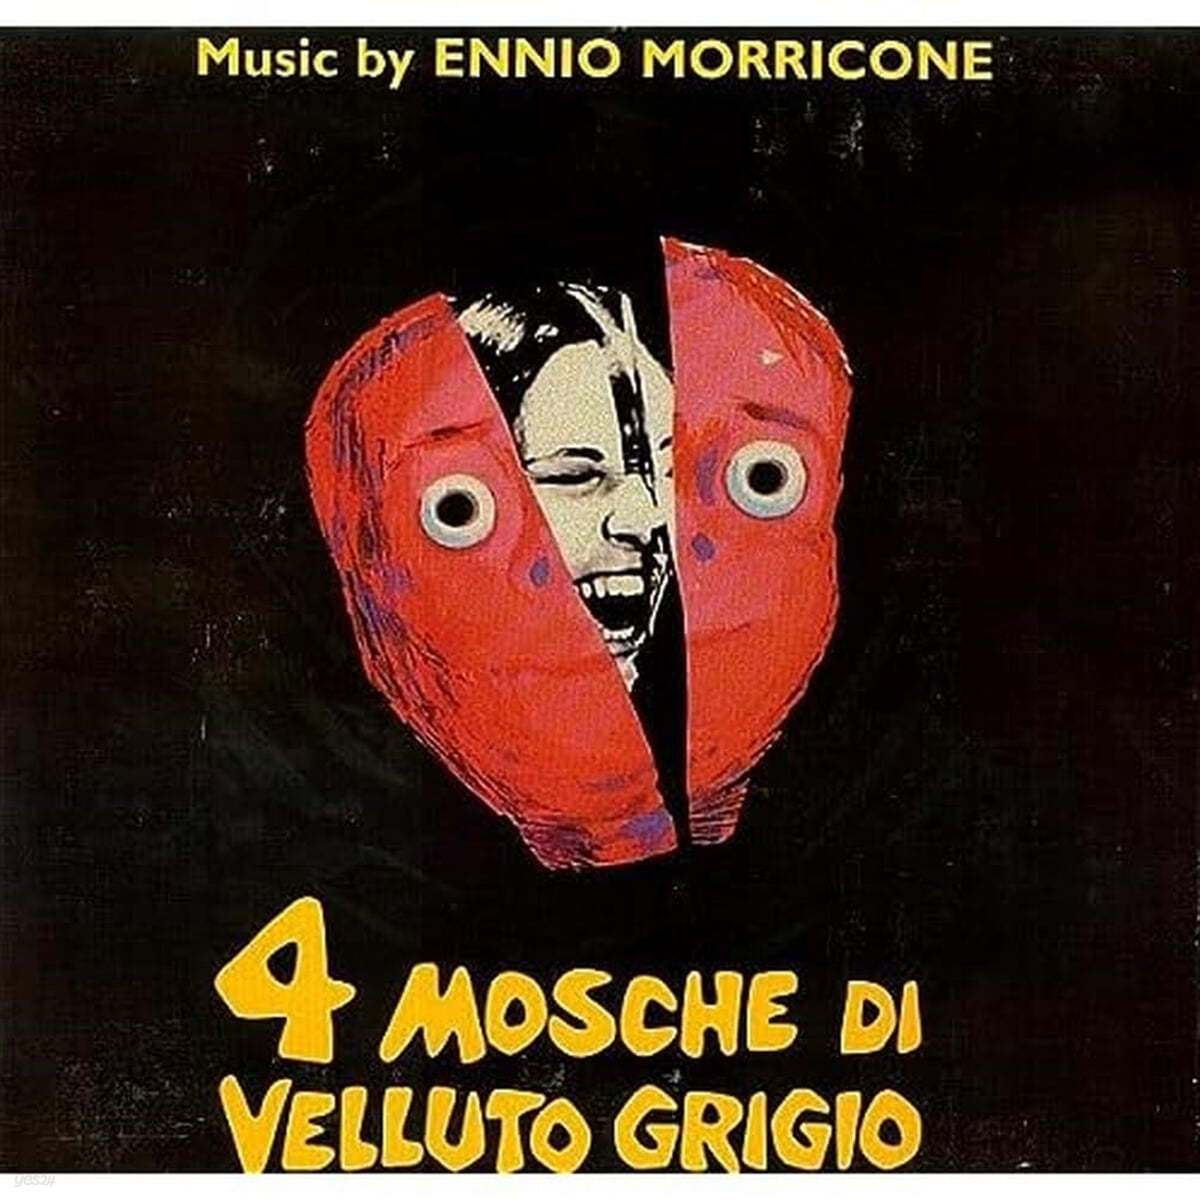 회색 벨벳 위의 네 마리 파리 영화음악 (4 mosche di velluto grigio OST by Ennio Morricone) [LP]